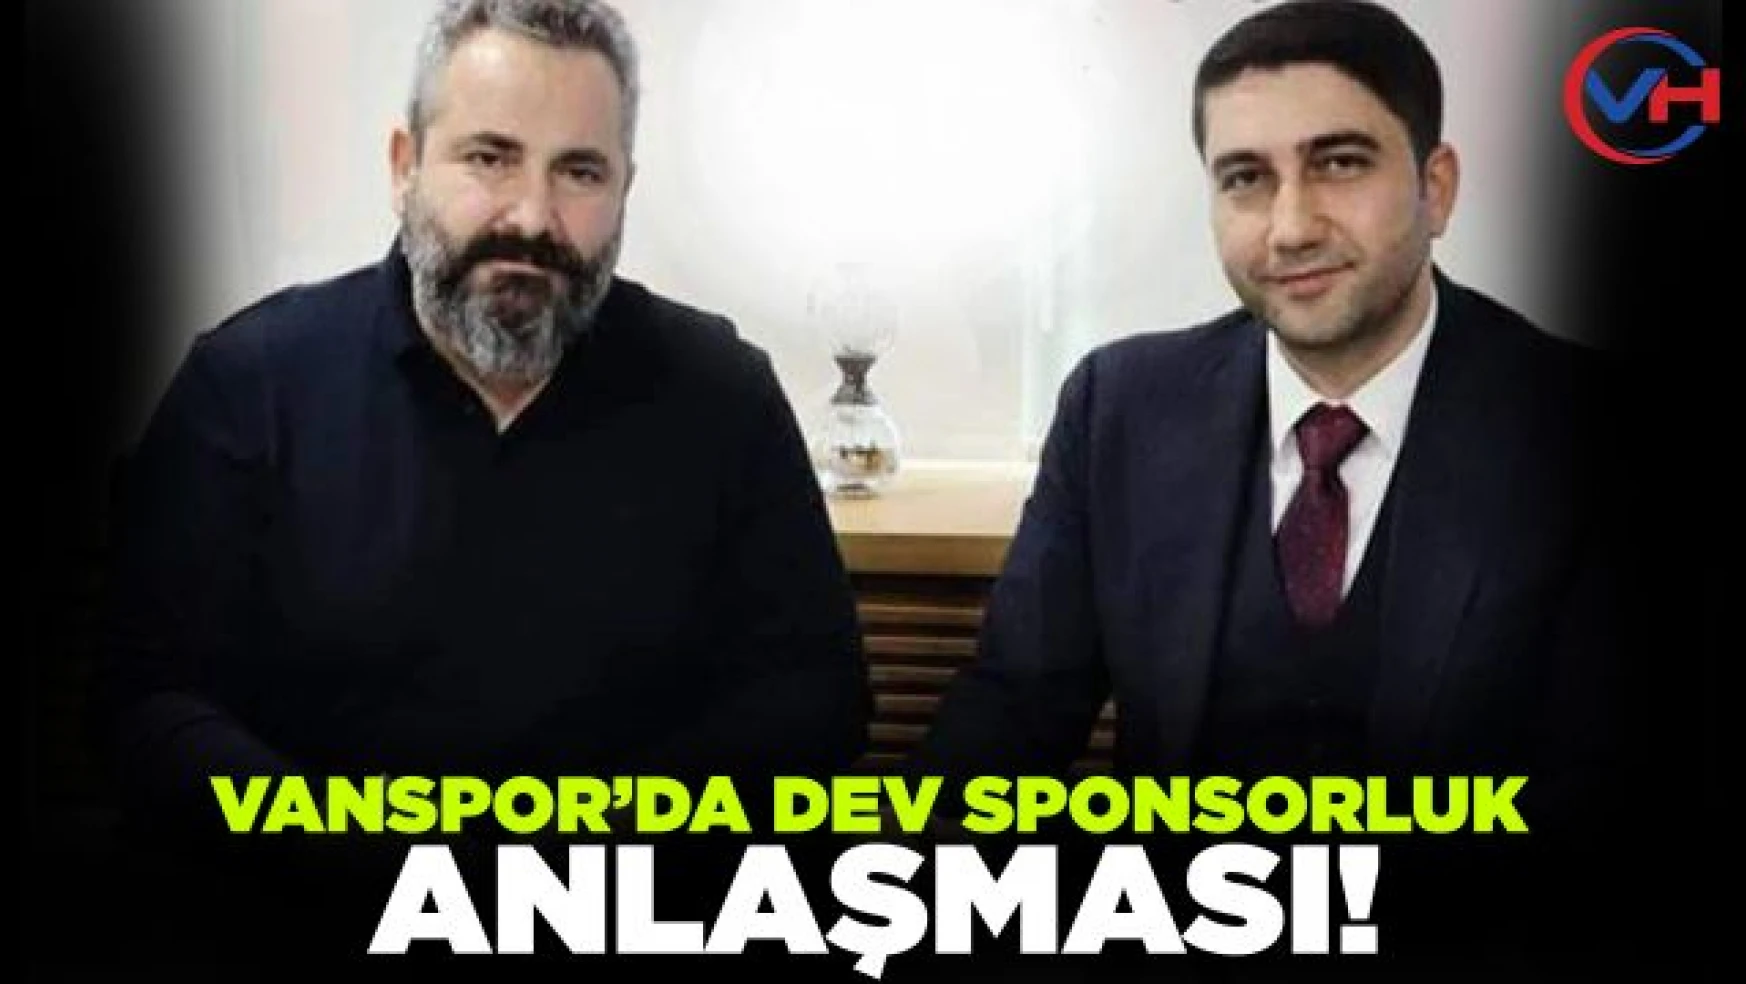 Vanspor'da dev sponsorluk anlaşması